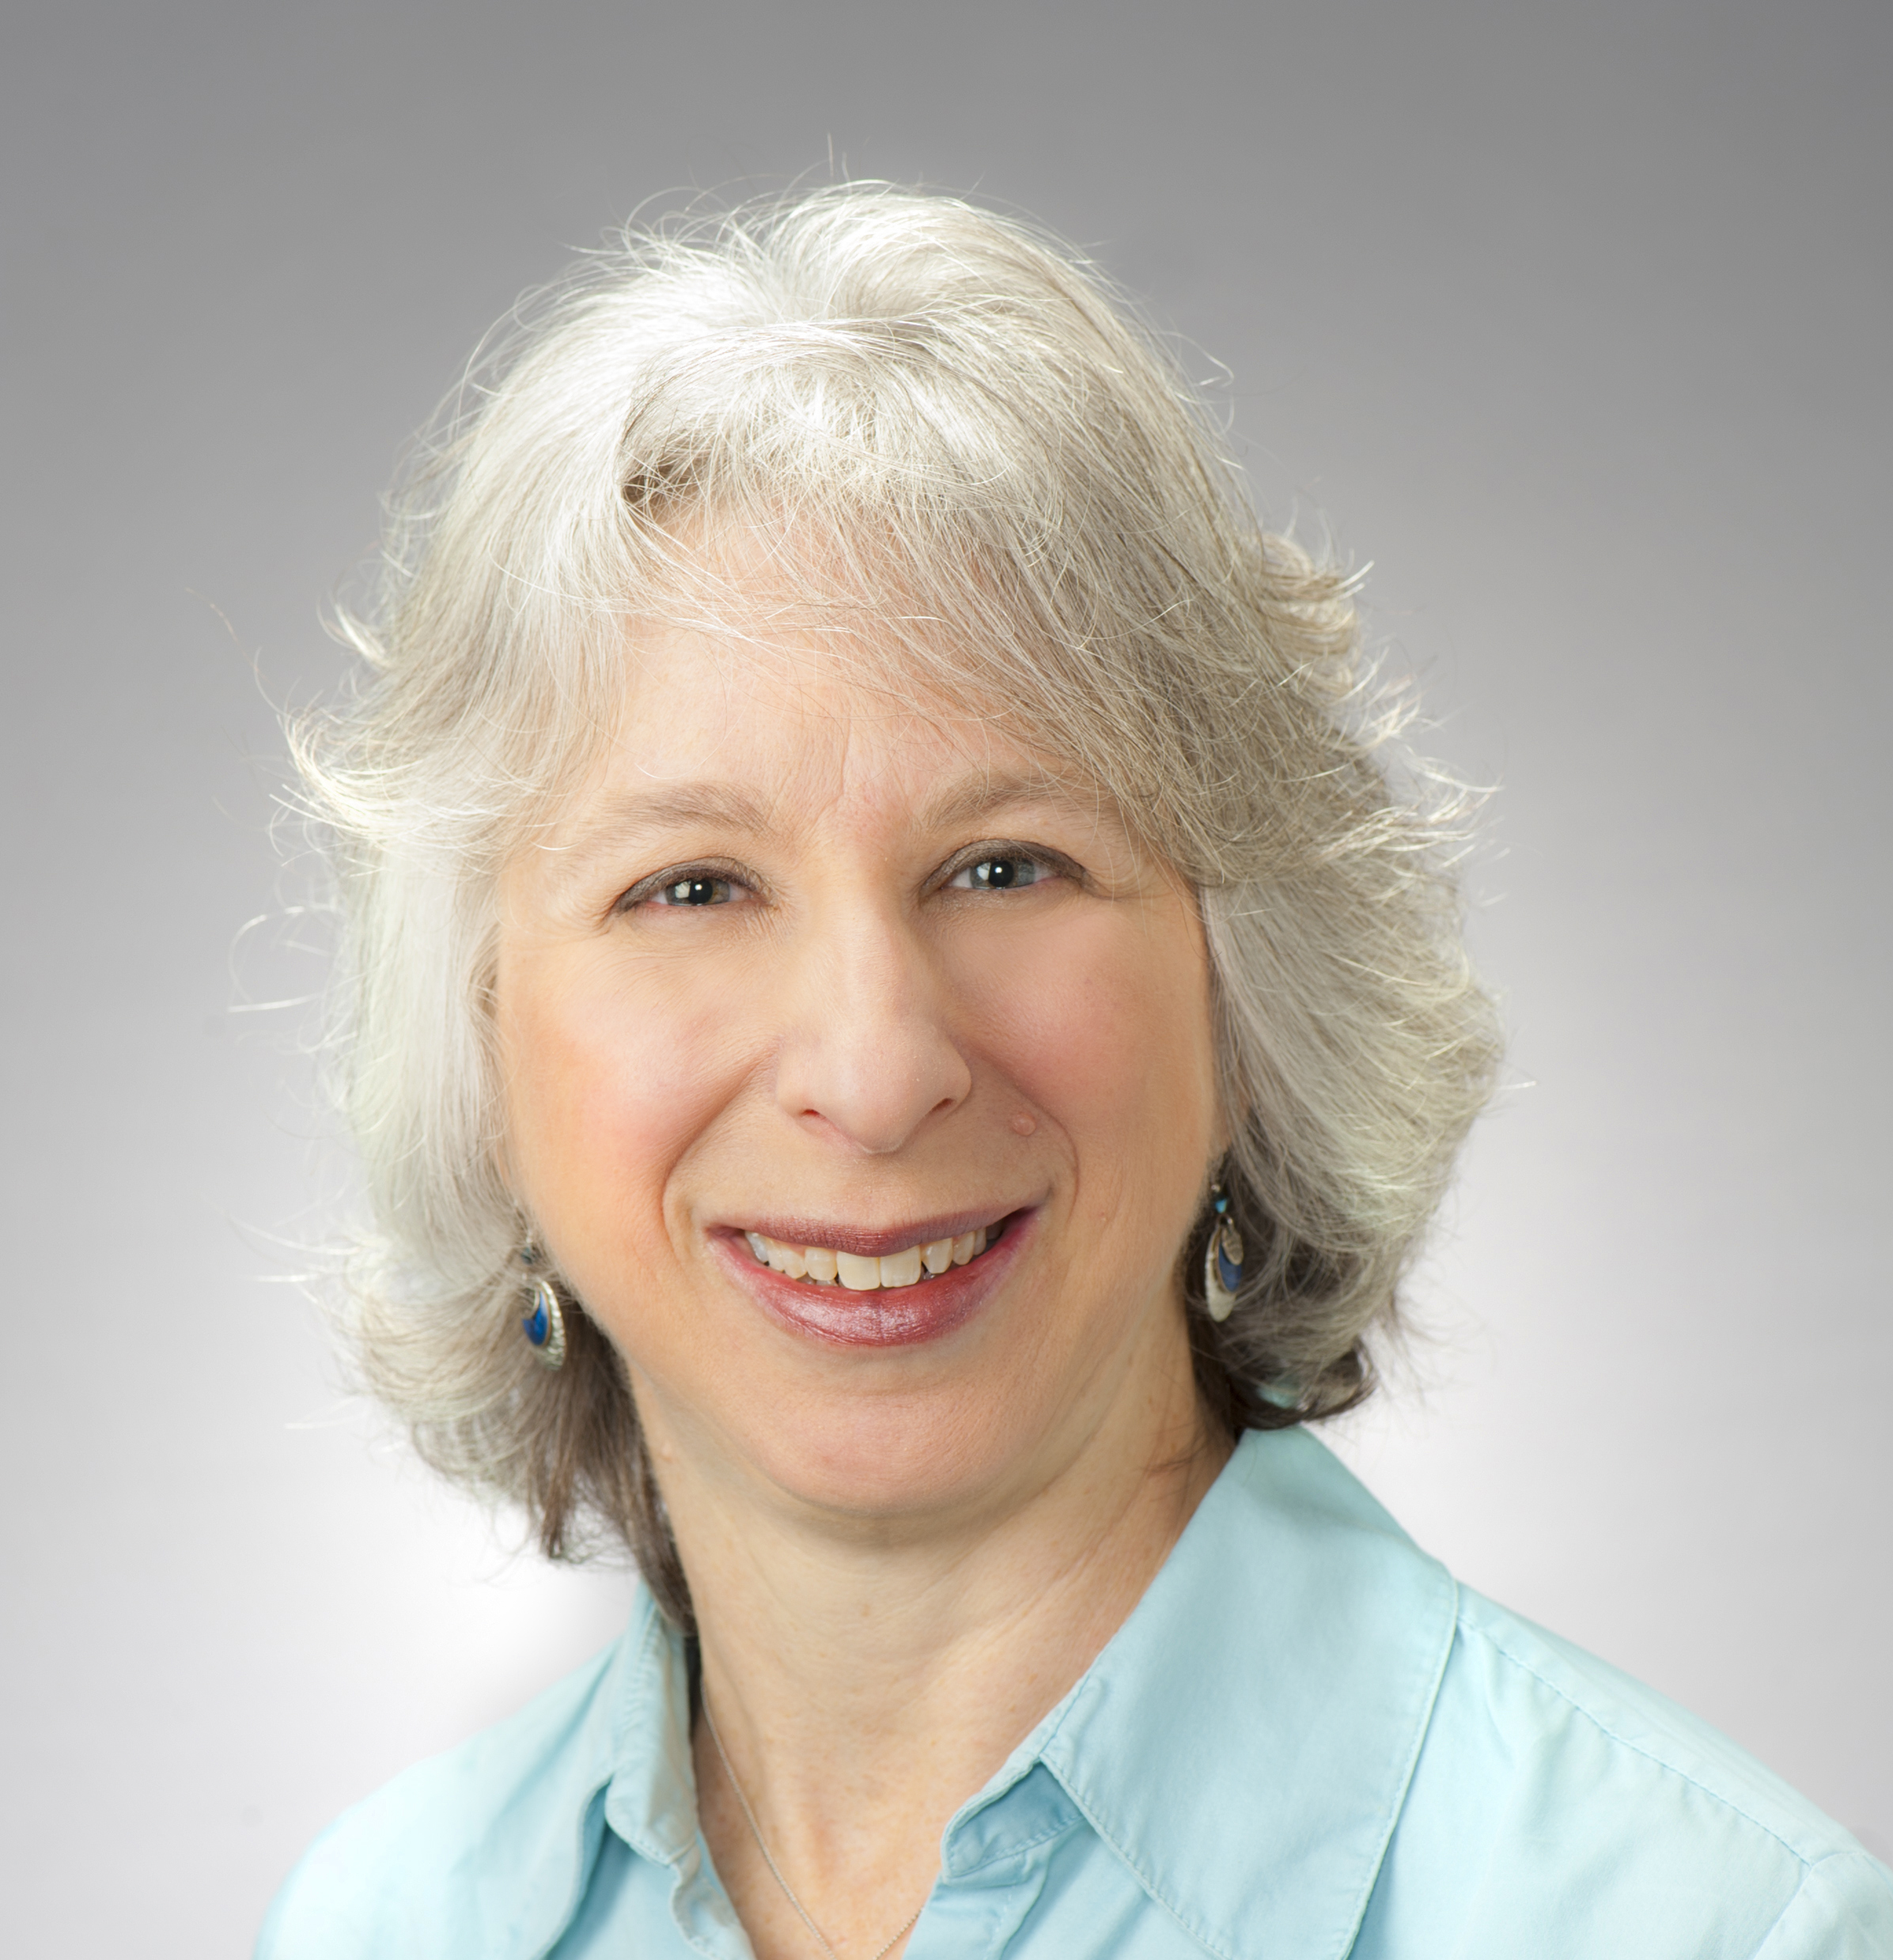 Dr. Barbara Baumann